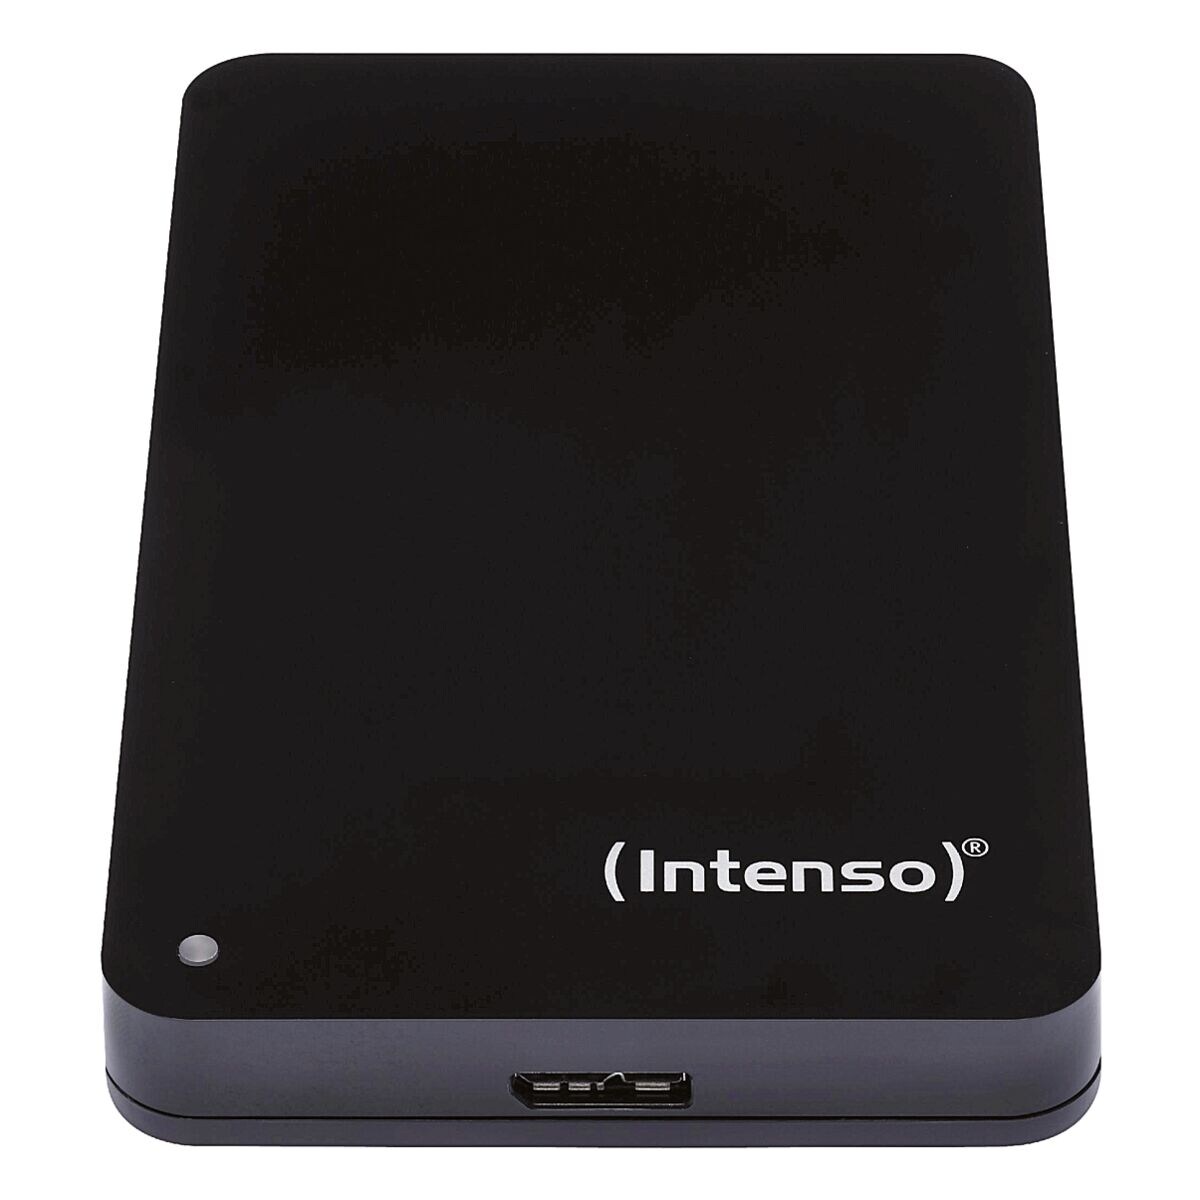 Intenso MemoryCase 1 TB, disque dur externe HDD, USB 3.0, 6,35 cm (2,5 pouces)